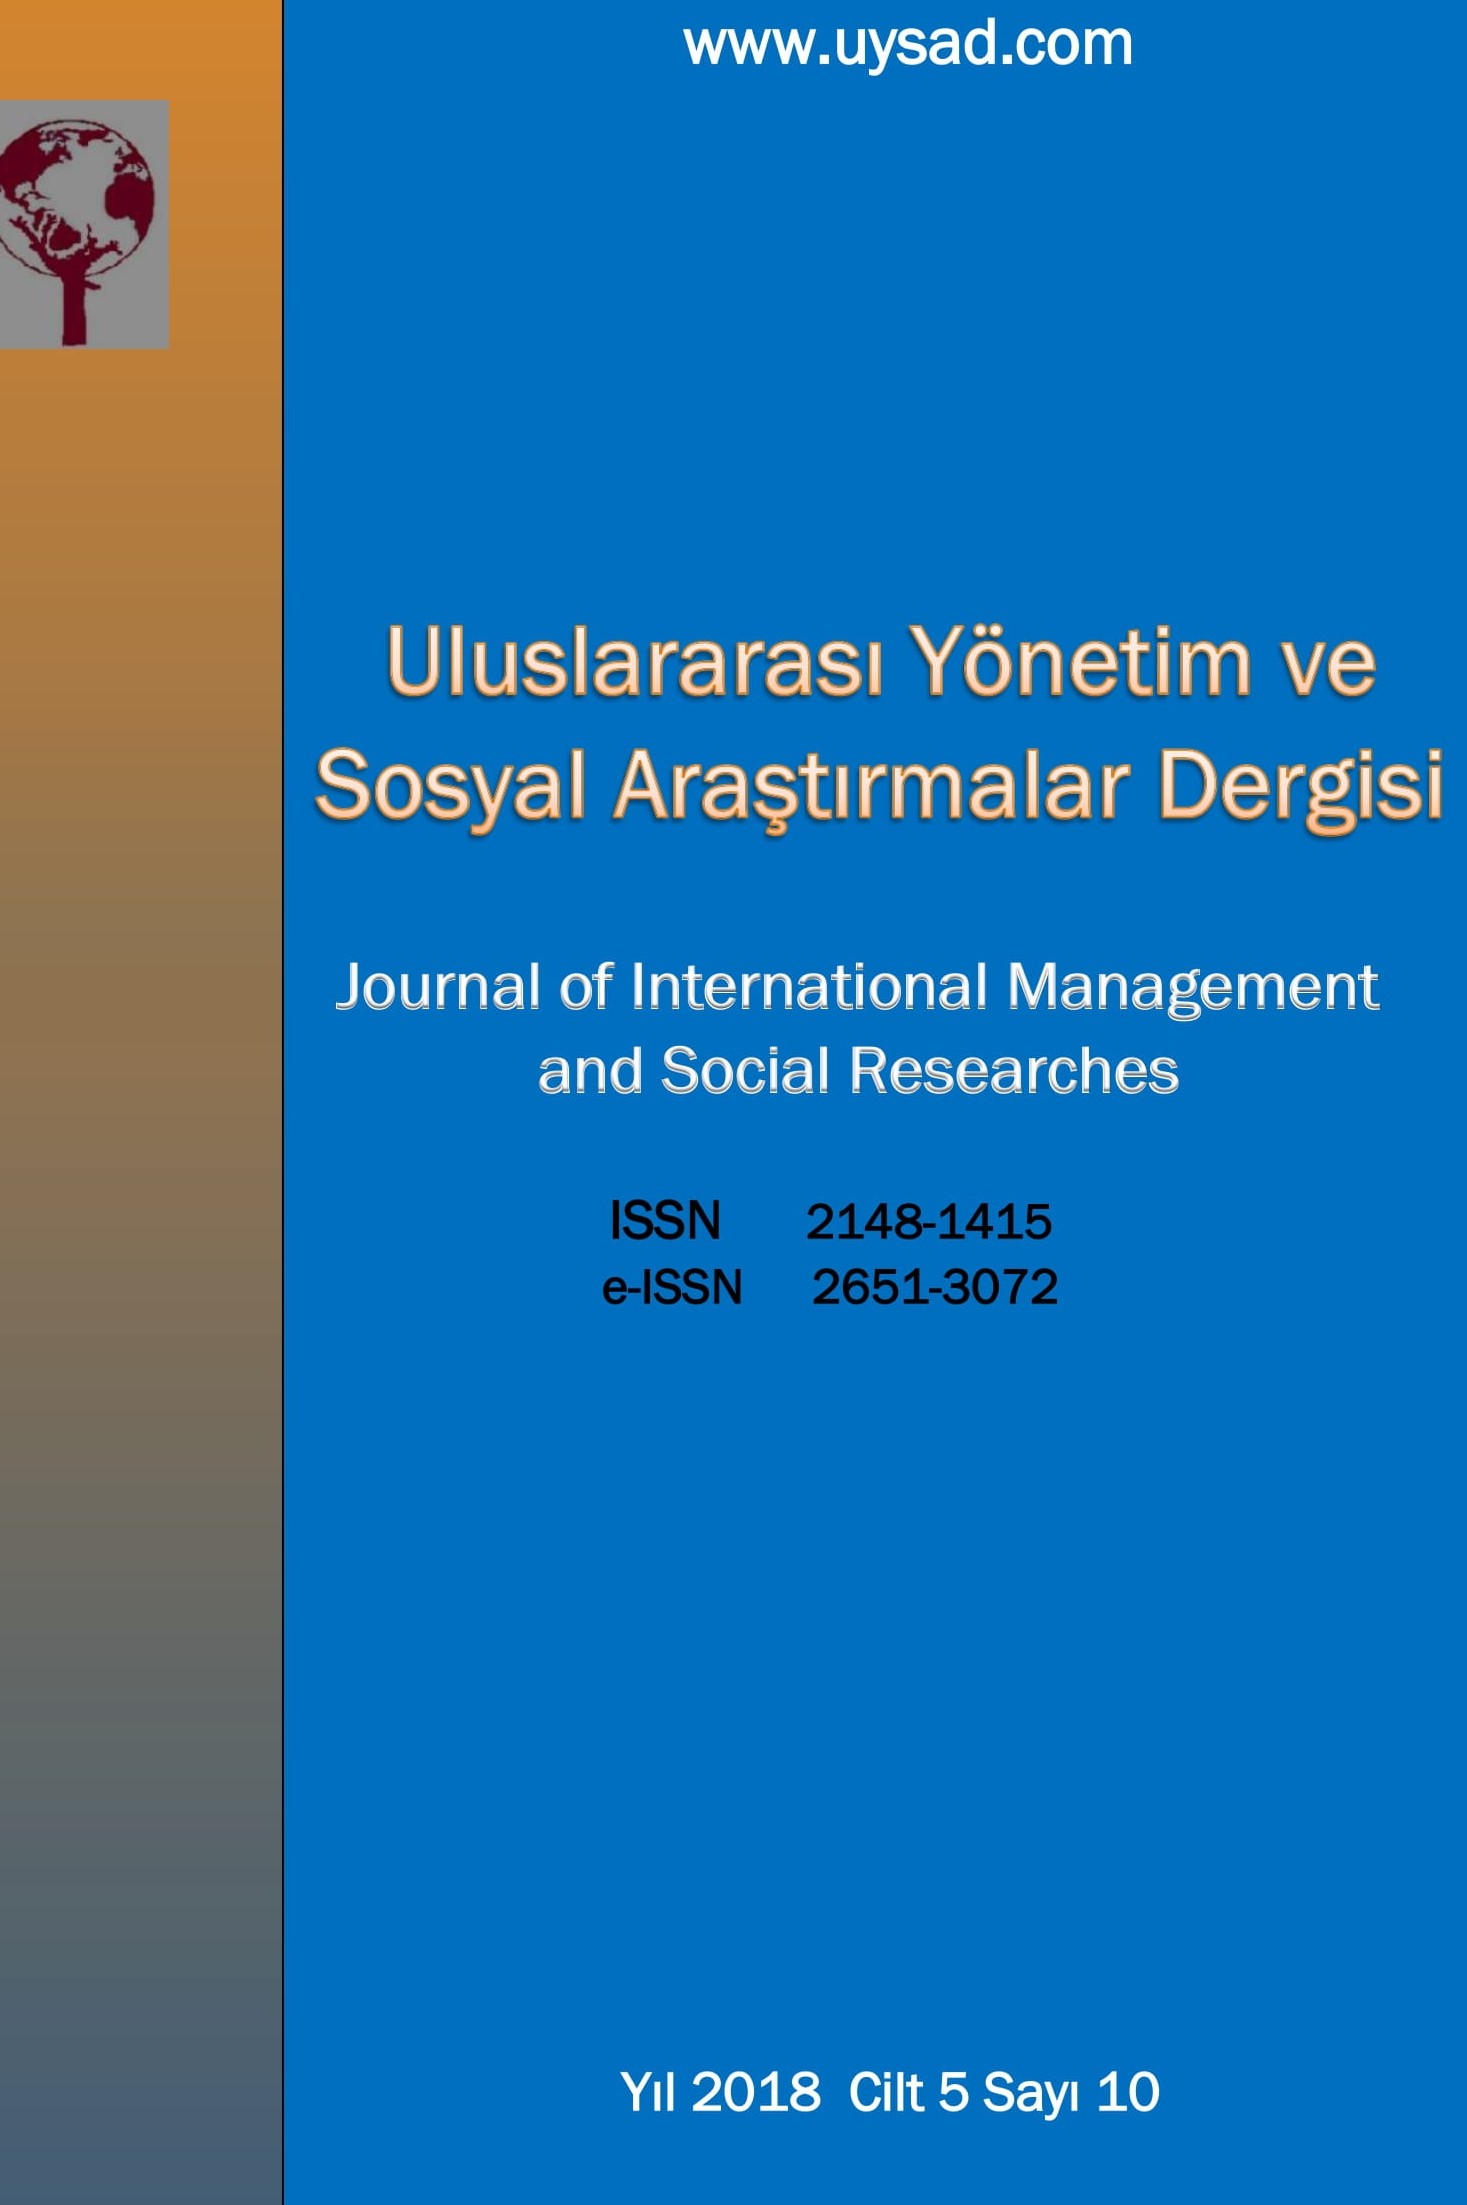 Uluslararası Yönetim ve Sosyal Araştırmalar Dergisi-Cover